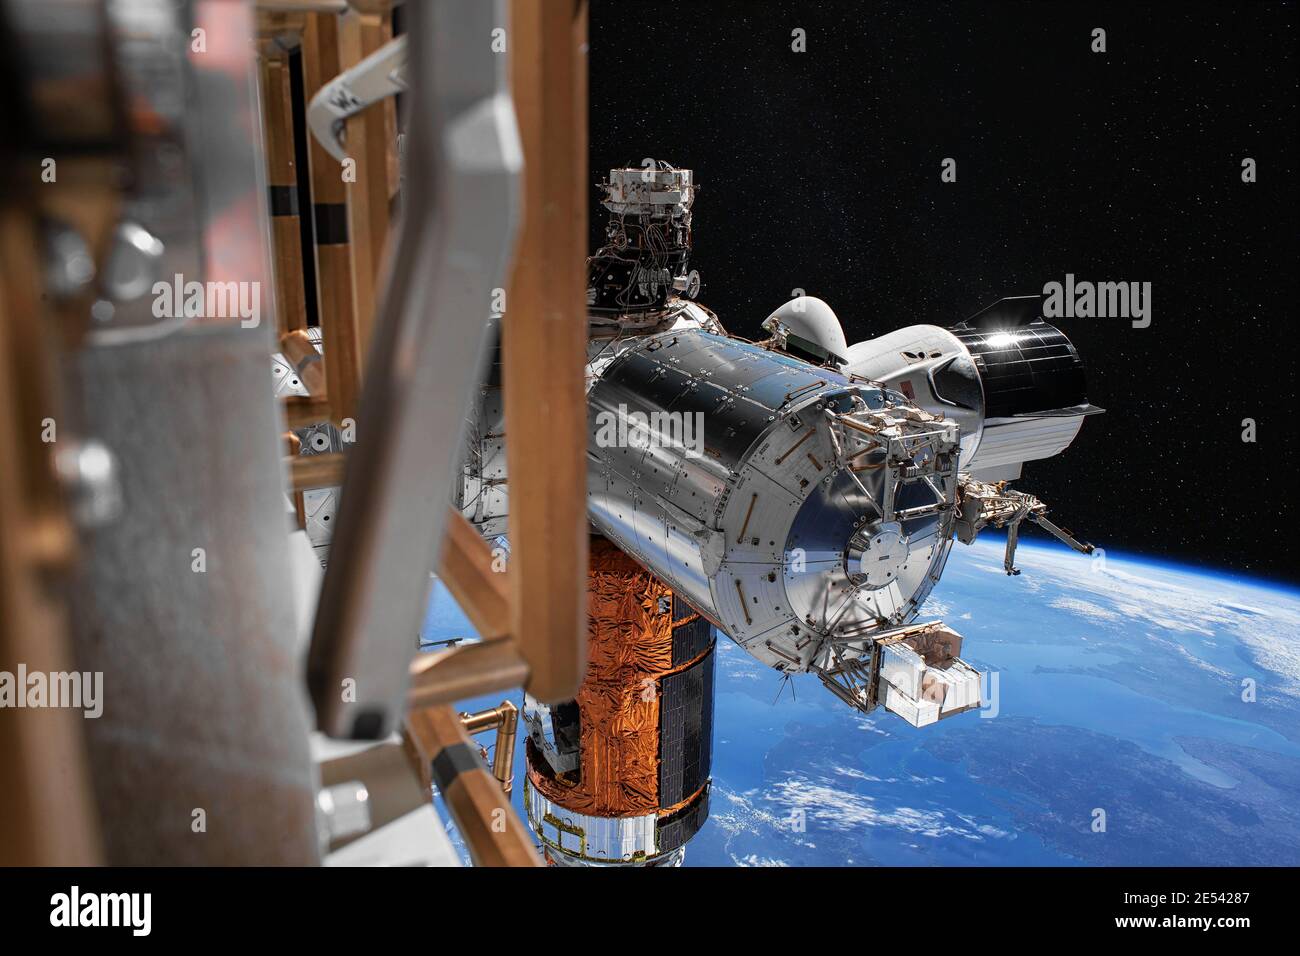 La nave espacial Spacex Crew Dragon está anclada a la Estación Espacial Internacional. Elementos de esta imagen proporcionados por la NASA. Foto de stock